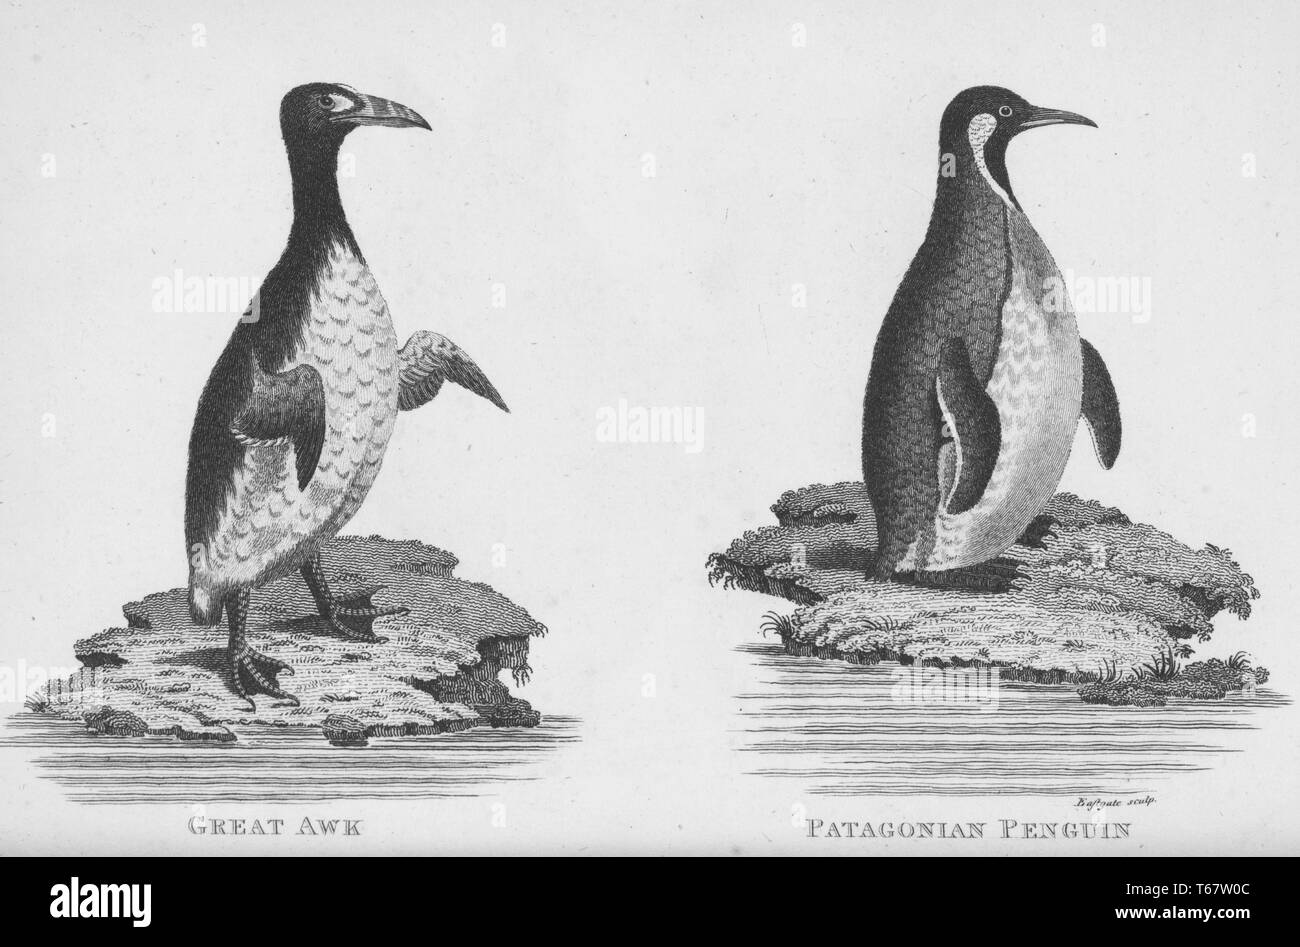 Deux gravures d'un livre sur le parc zoologique des conférences données par George Shaw à la Royal Institution of Great Britain, Shaw était un botaniste britannique et qui zoologiste publié plusieurs livres, l'image de gauche montre un grand pingouin qui était un oiseau et le seul pingouin moderne, l'image de droite montre un pingouin pingouin de Patagonie qui sont des espèces indigènes de l'Amérique du Sud et sont classés comme une espèce menacée, 1809. À partir de la Bibliothèque publique de New York. Banque D'Images